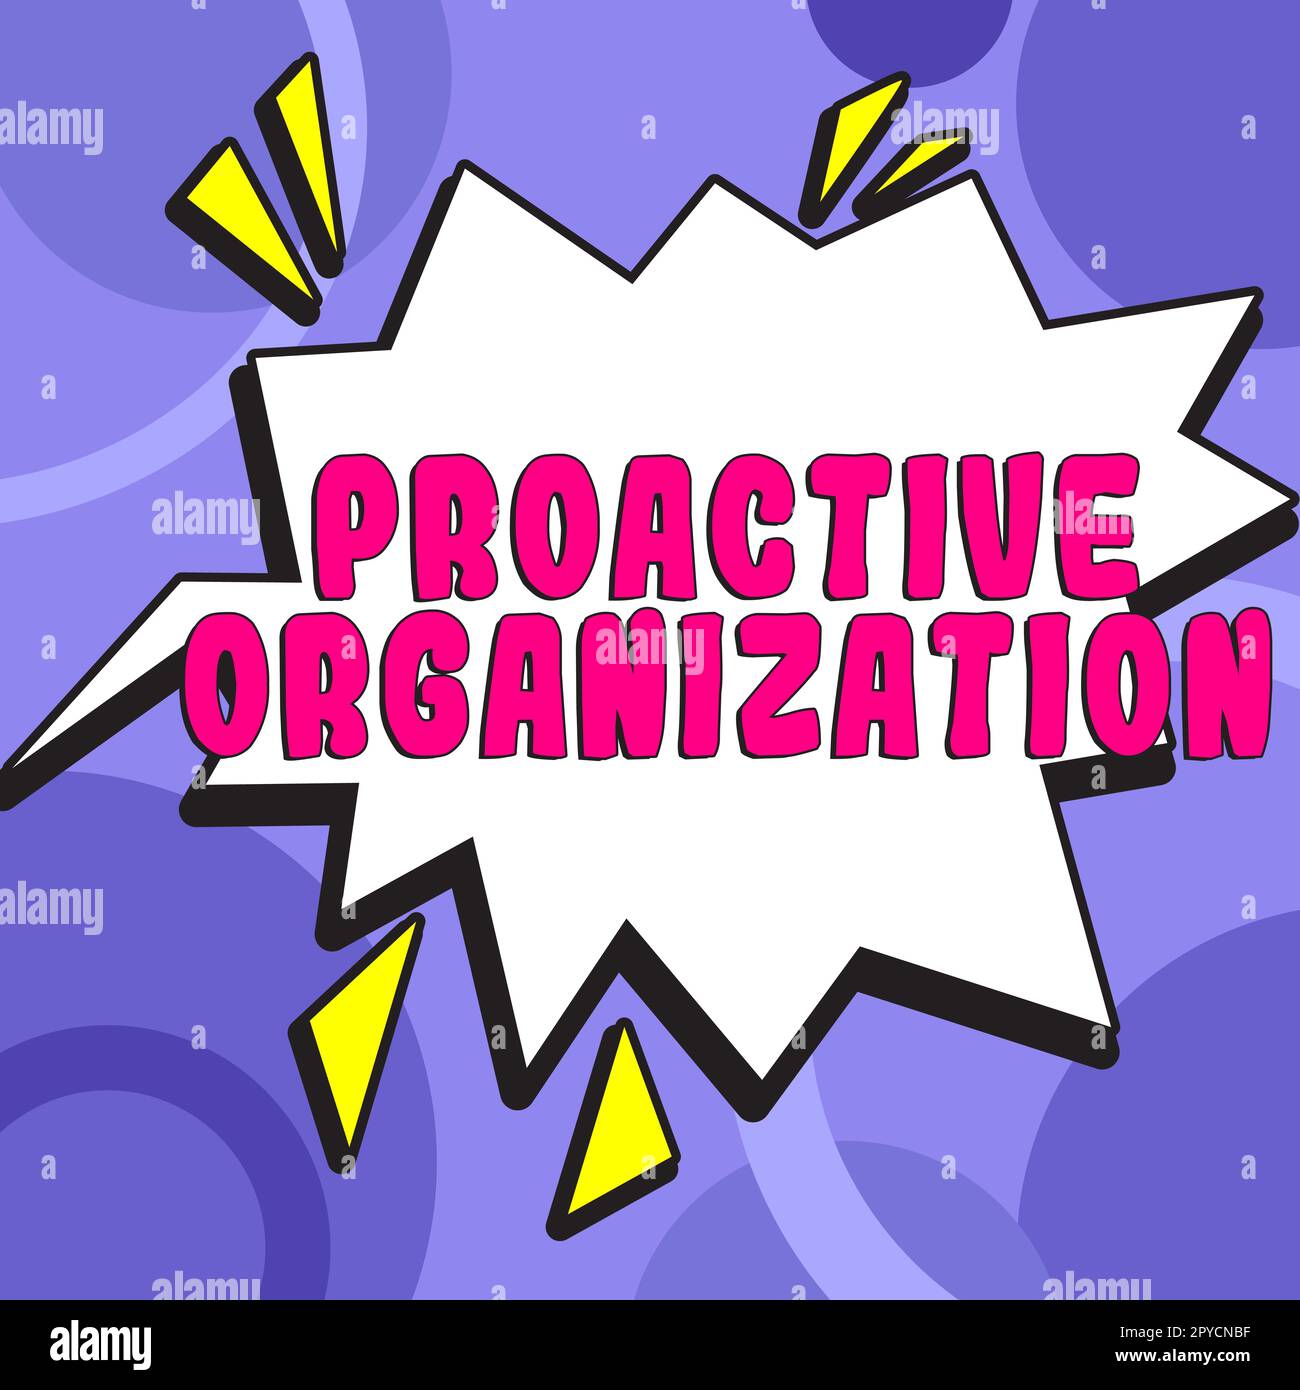 Affiche textuelle indiquant proactive Organization. Mot pour l'action et le comportement axé sur les résultats d'une entreprise Banque D'Images